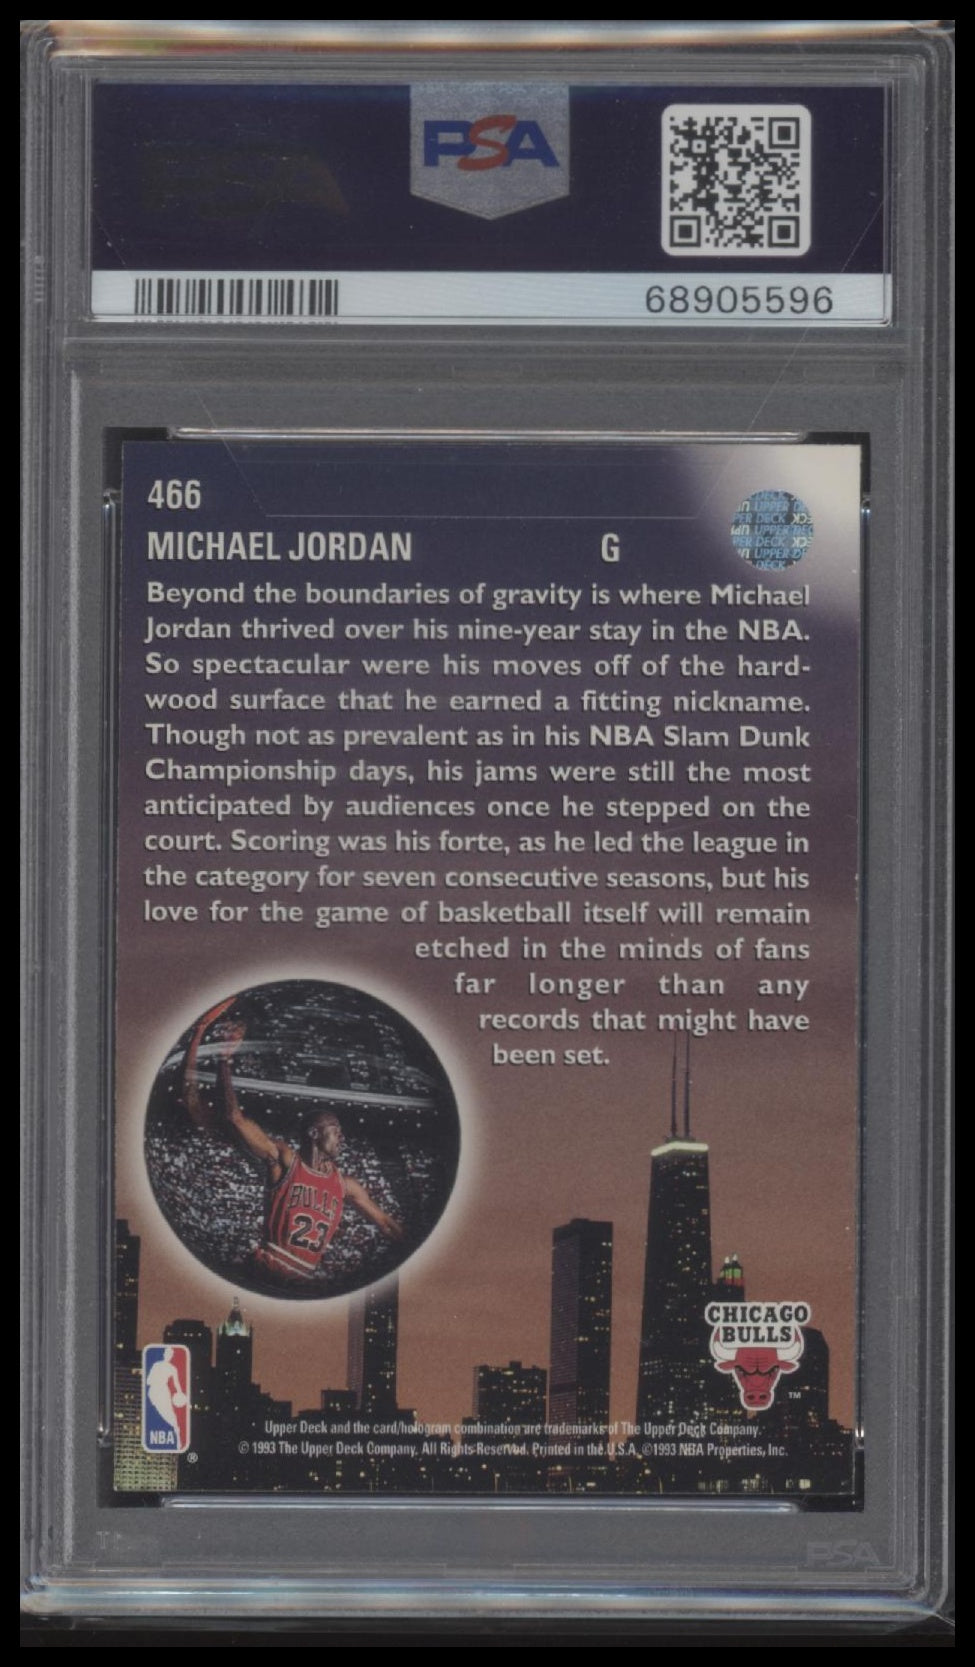 Michael Jordan 1993 Upper Deck #466 PSA 8